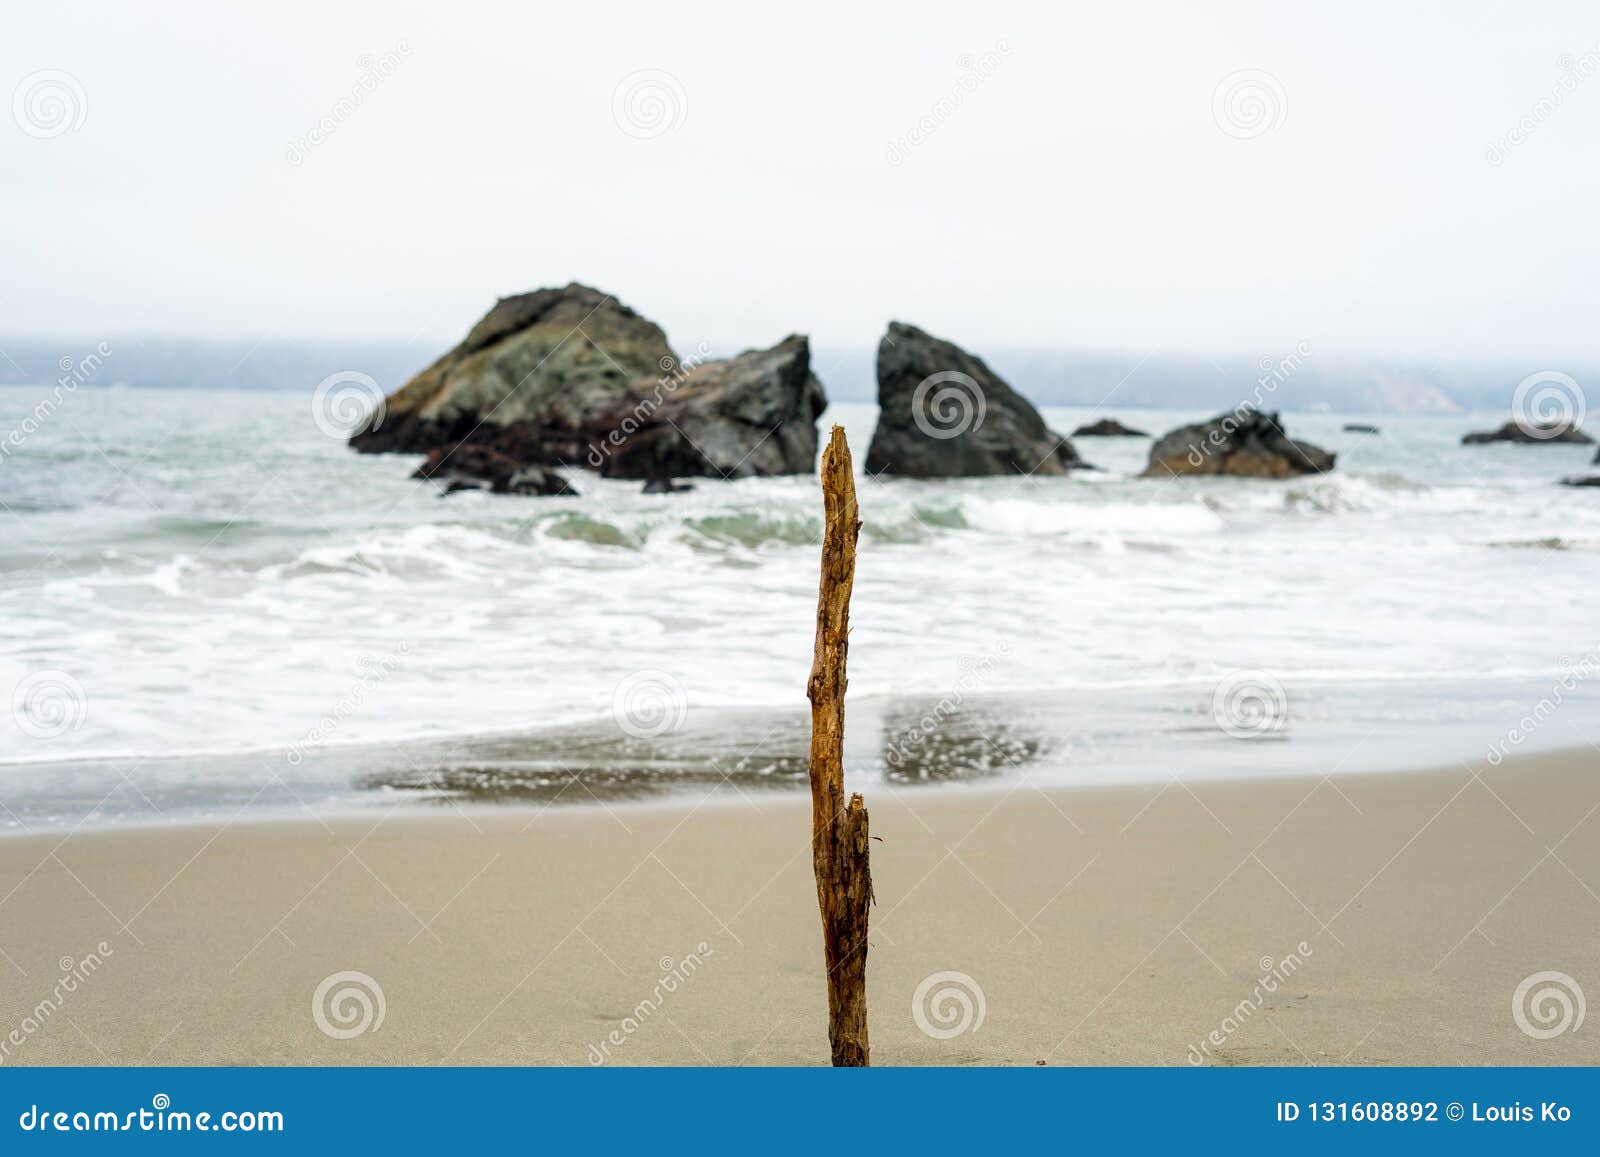 wood stick in beach